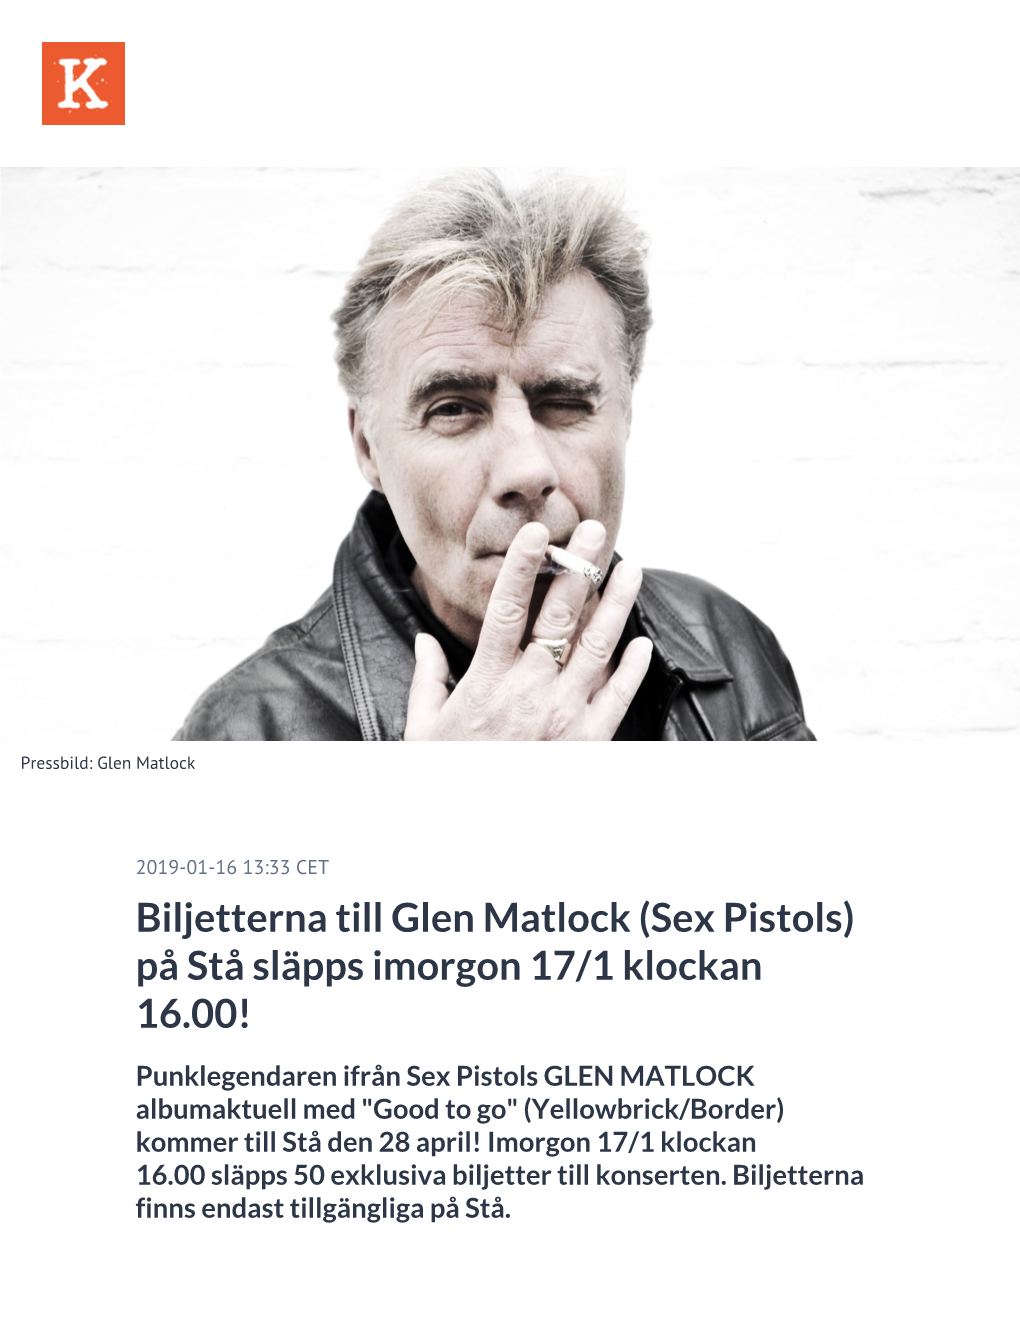 Biljetterna Till Glen Matlock (Sex Pistols) På Stå Släpps Imorgon 17/1 Klockan 16.00!